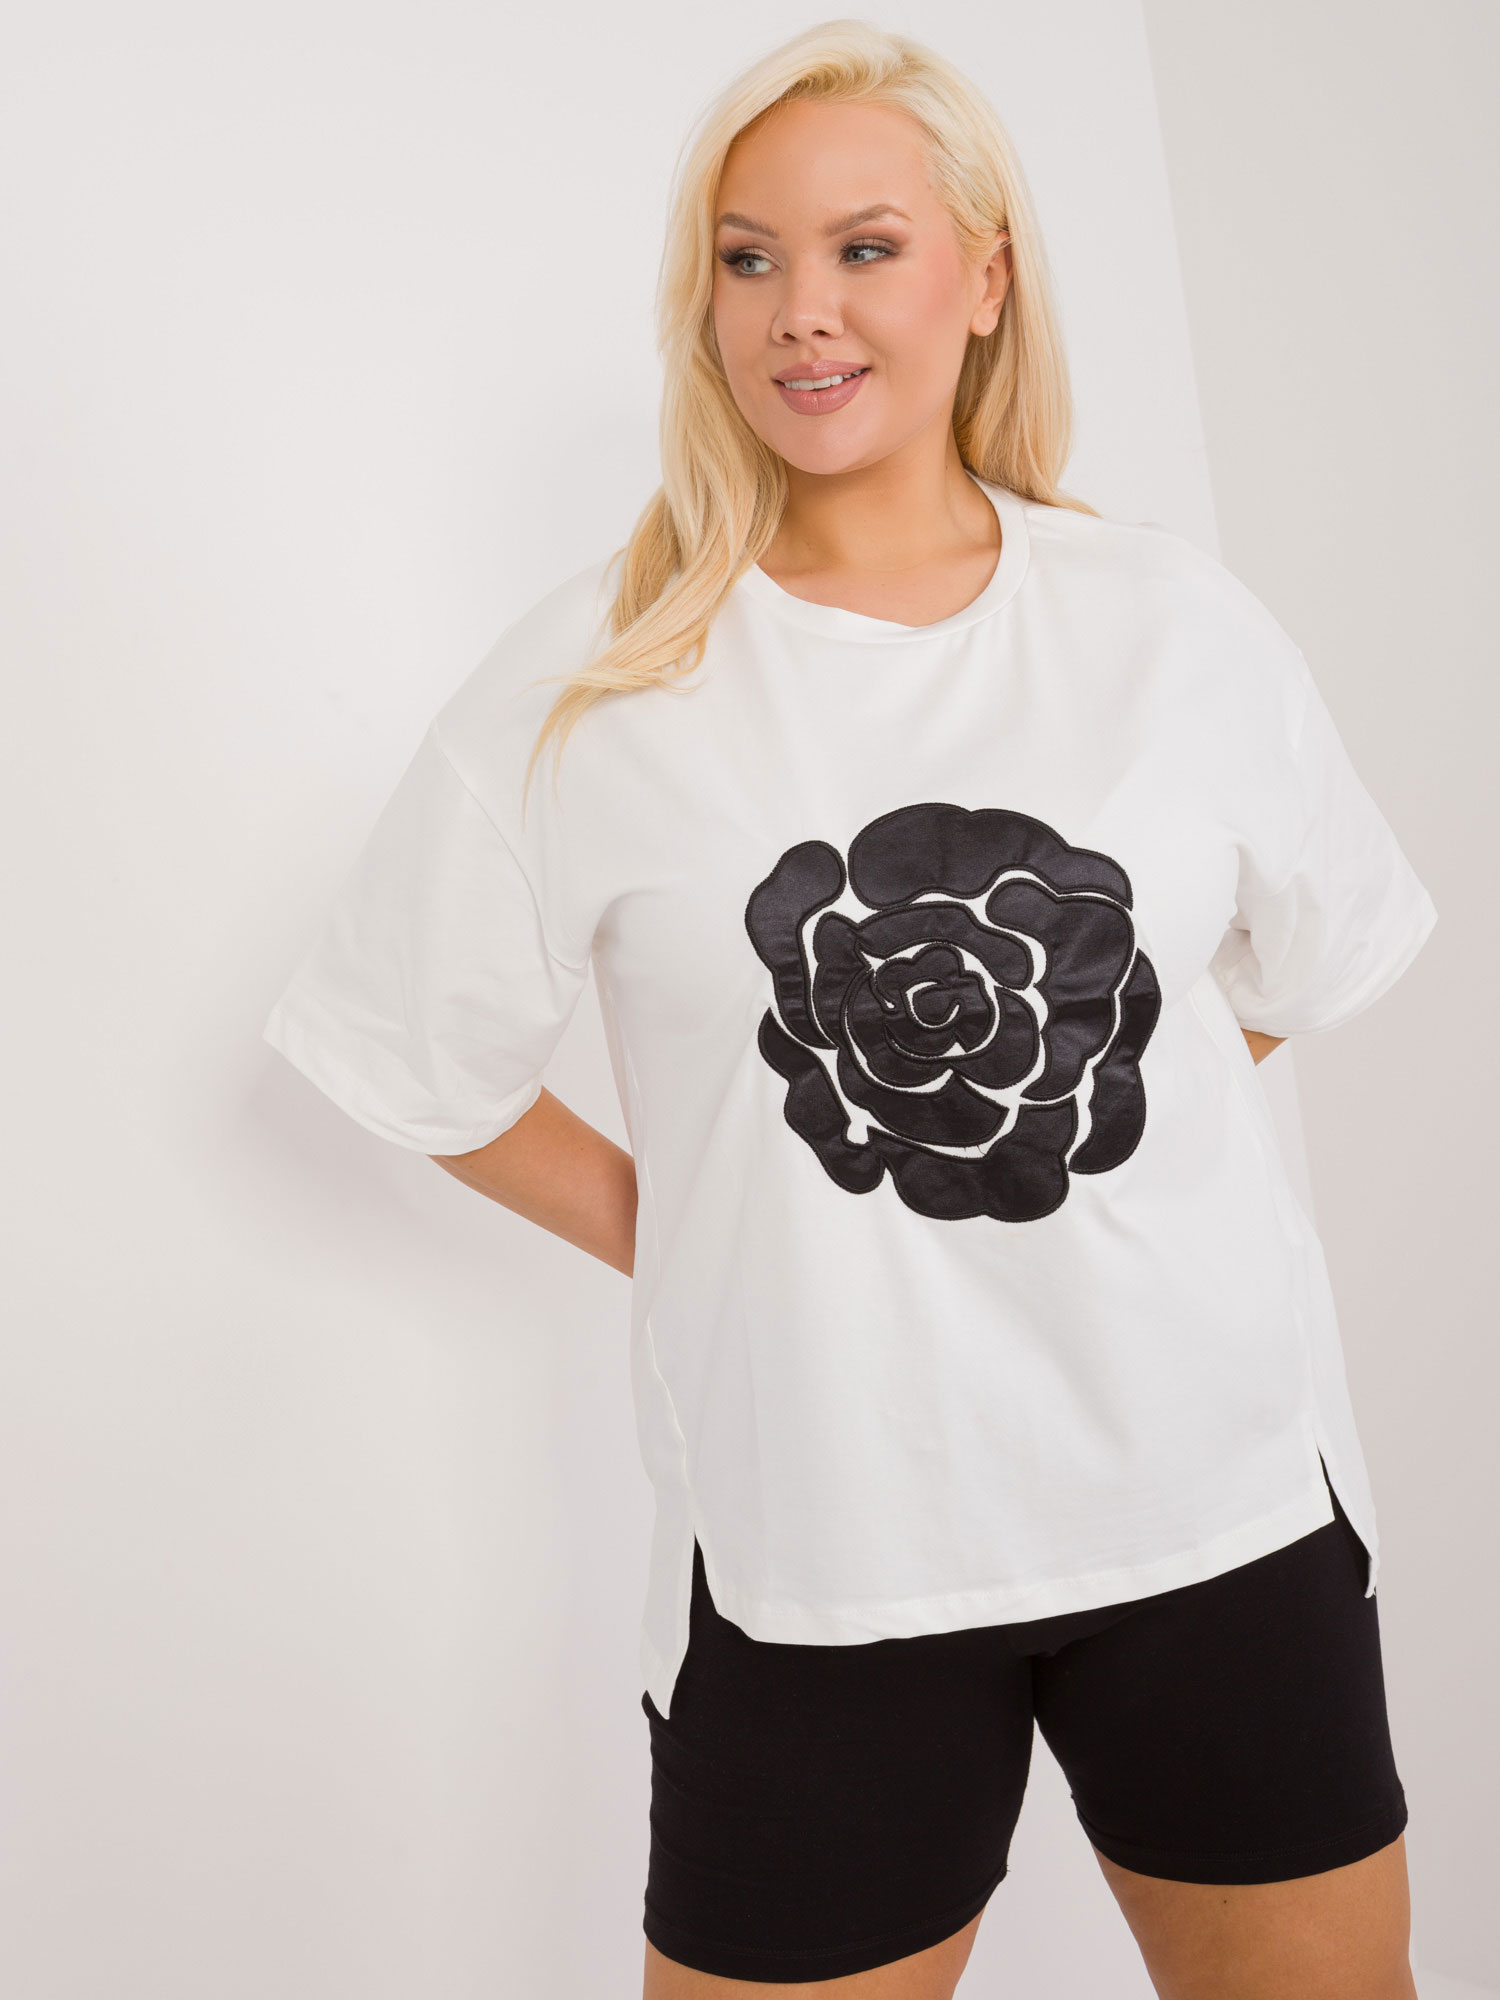 Bílé tričko s aplikací květiny --FA-BZ-9325.59-white Velikost: ONE SIZE